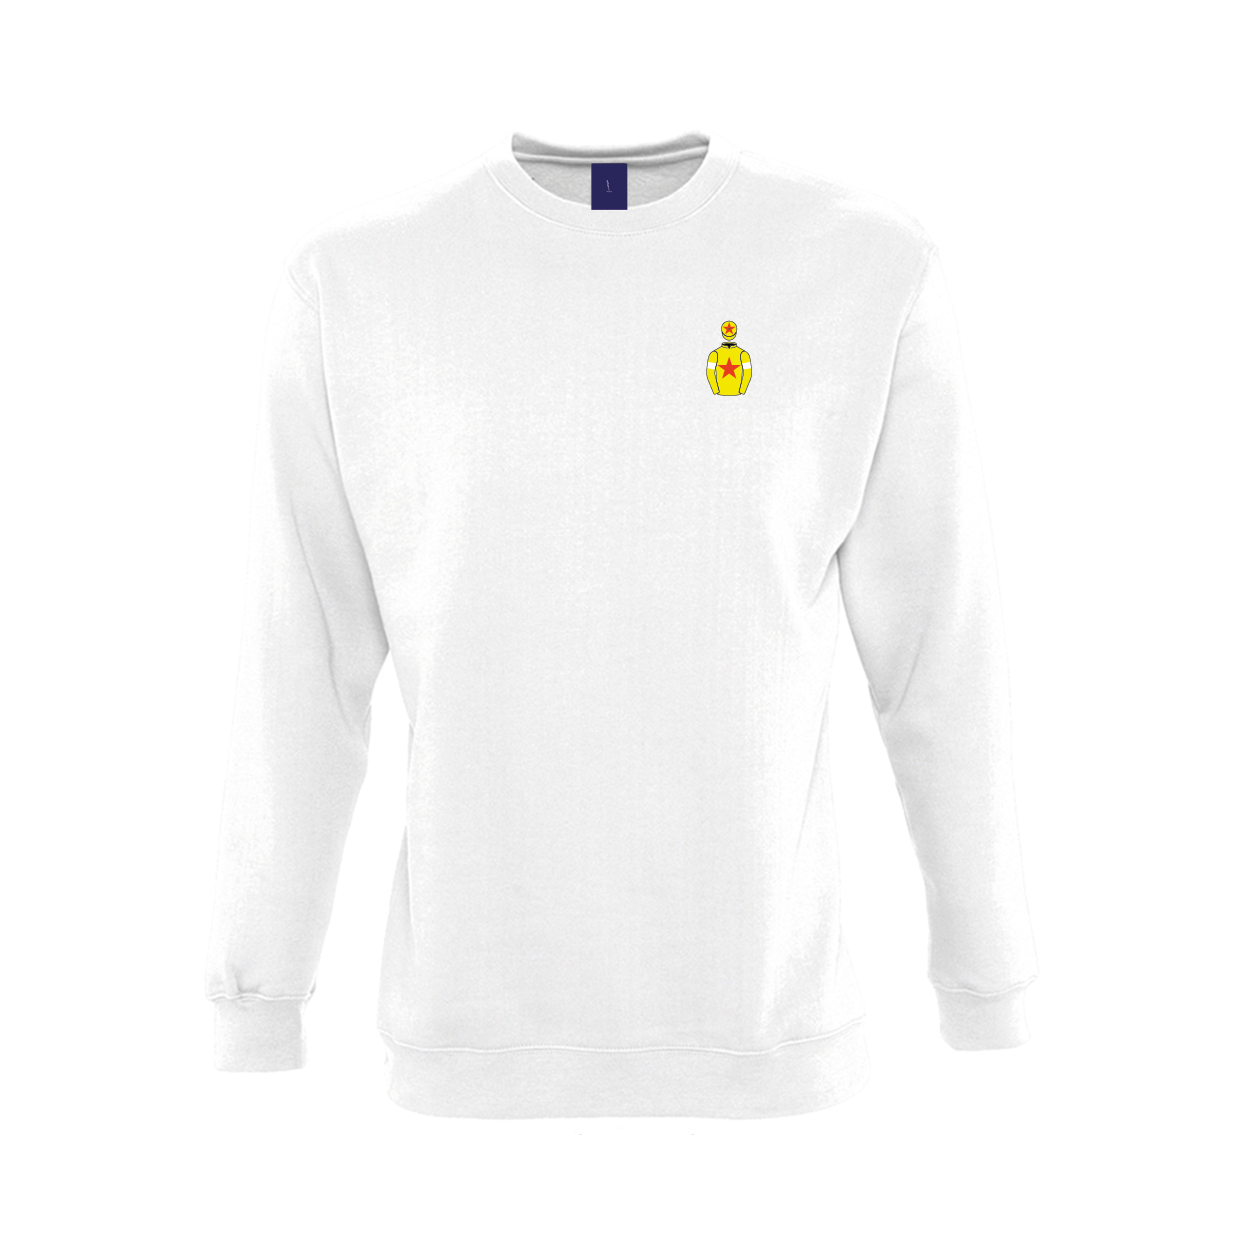 Unisex John Hales Embroidered Sweatshirt - Clothing - Hacked Up